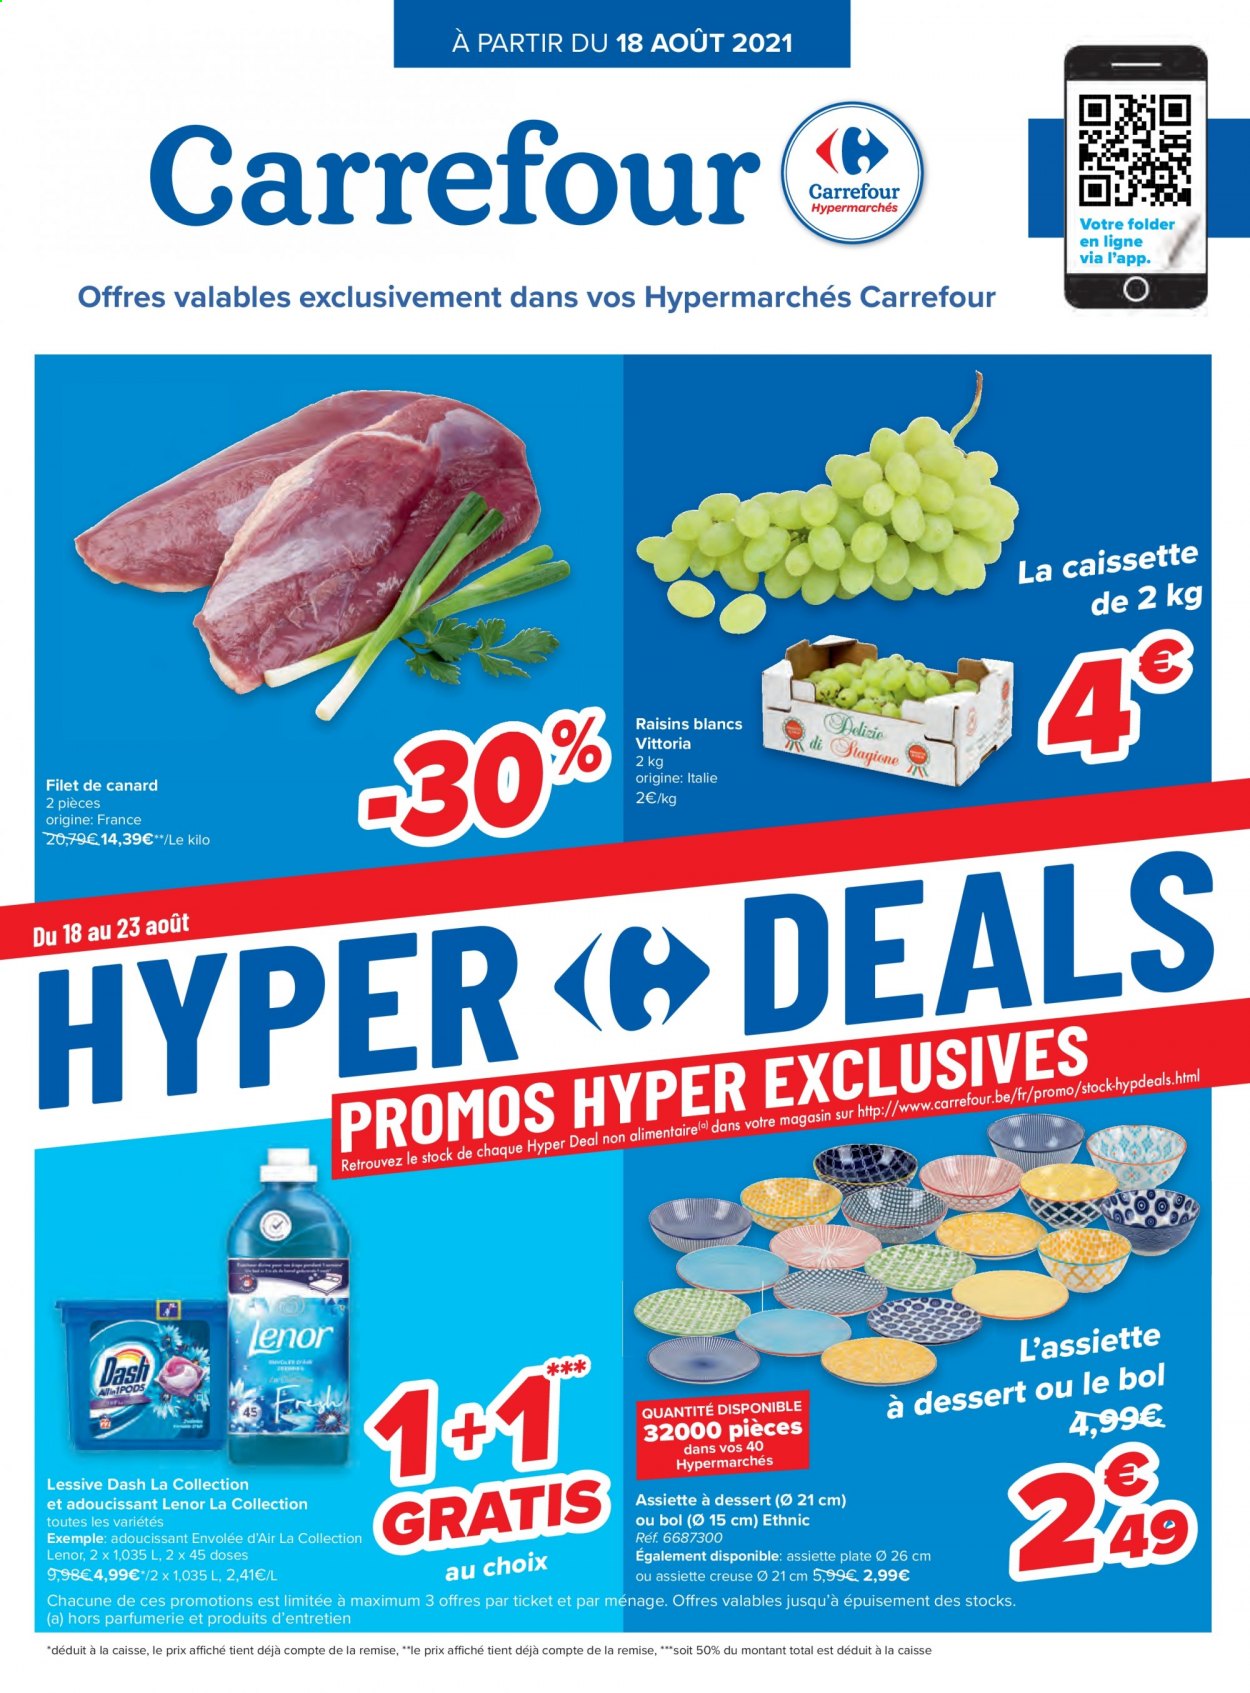 thumbnail - Catalogue Carrefour hypermarkt - 18/08/2021 - 30/08/2021 - Produits soldés - filet de canard, raisins, assouplissant, lessive, Lenor. Page 1.